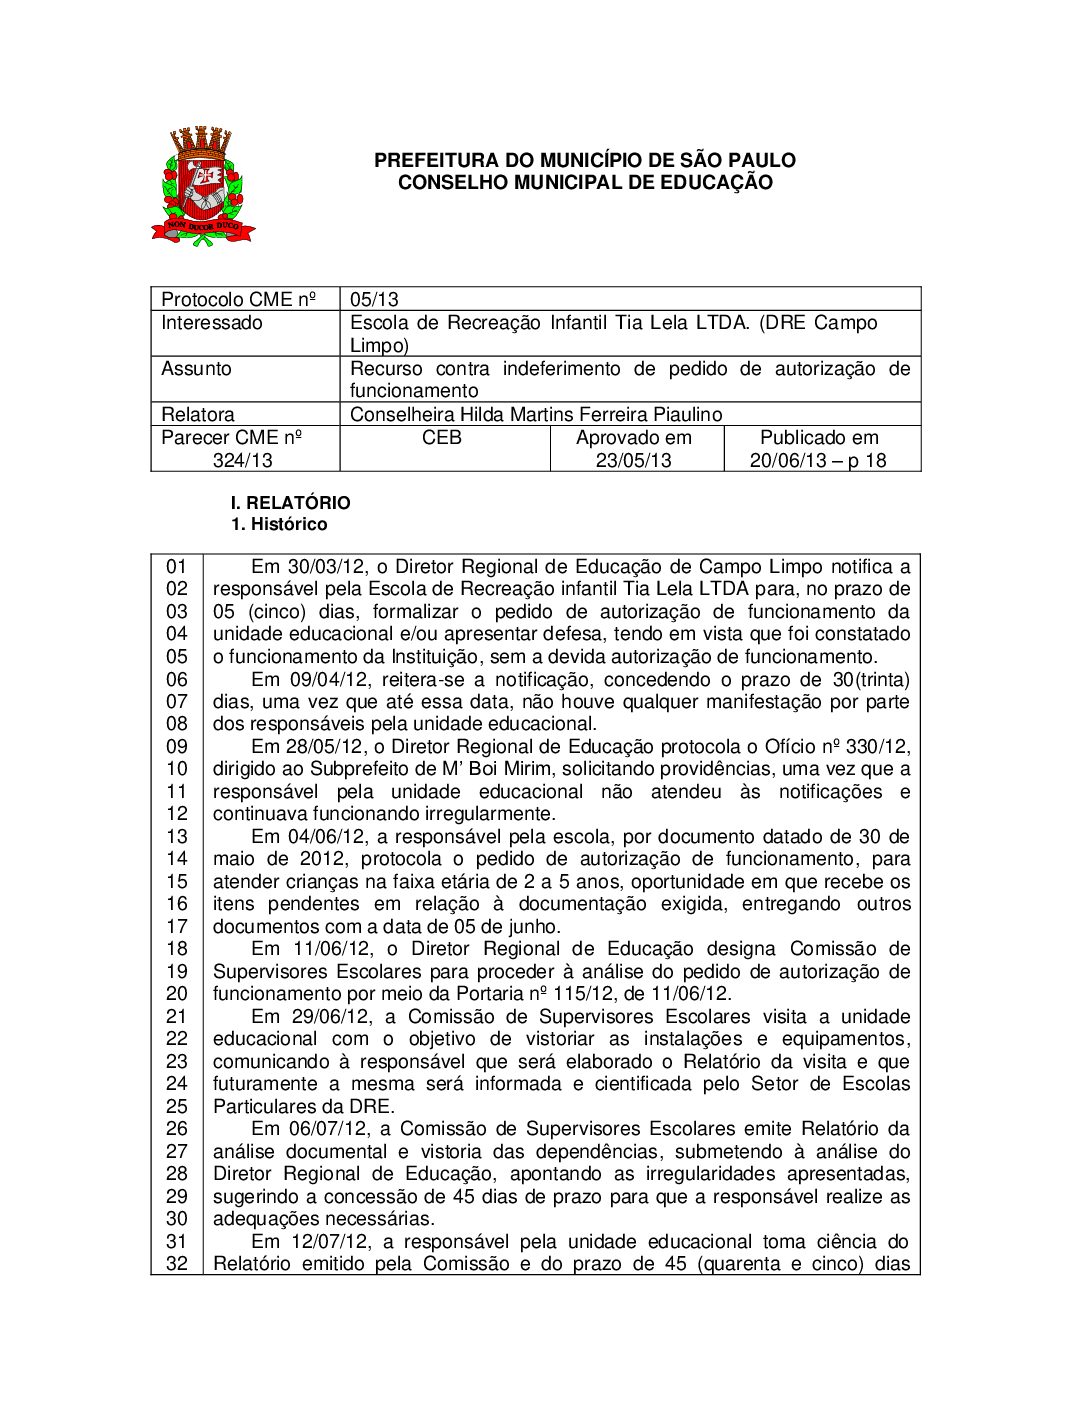 Parecer CME nº 324/2013 - Escola de Recreação Infantil Tia Lela LTDA (DRE Campo Limpo) - Recurso contra indeferimento de pedido de autorização de funcionamento 